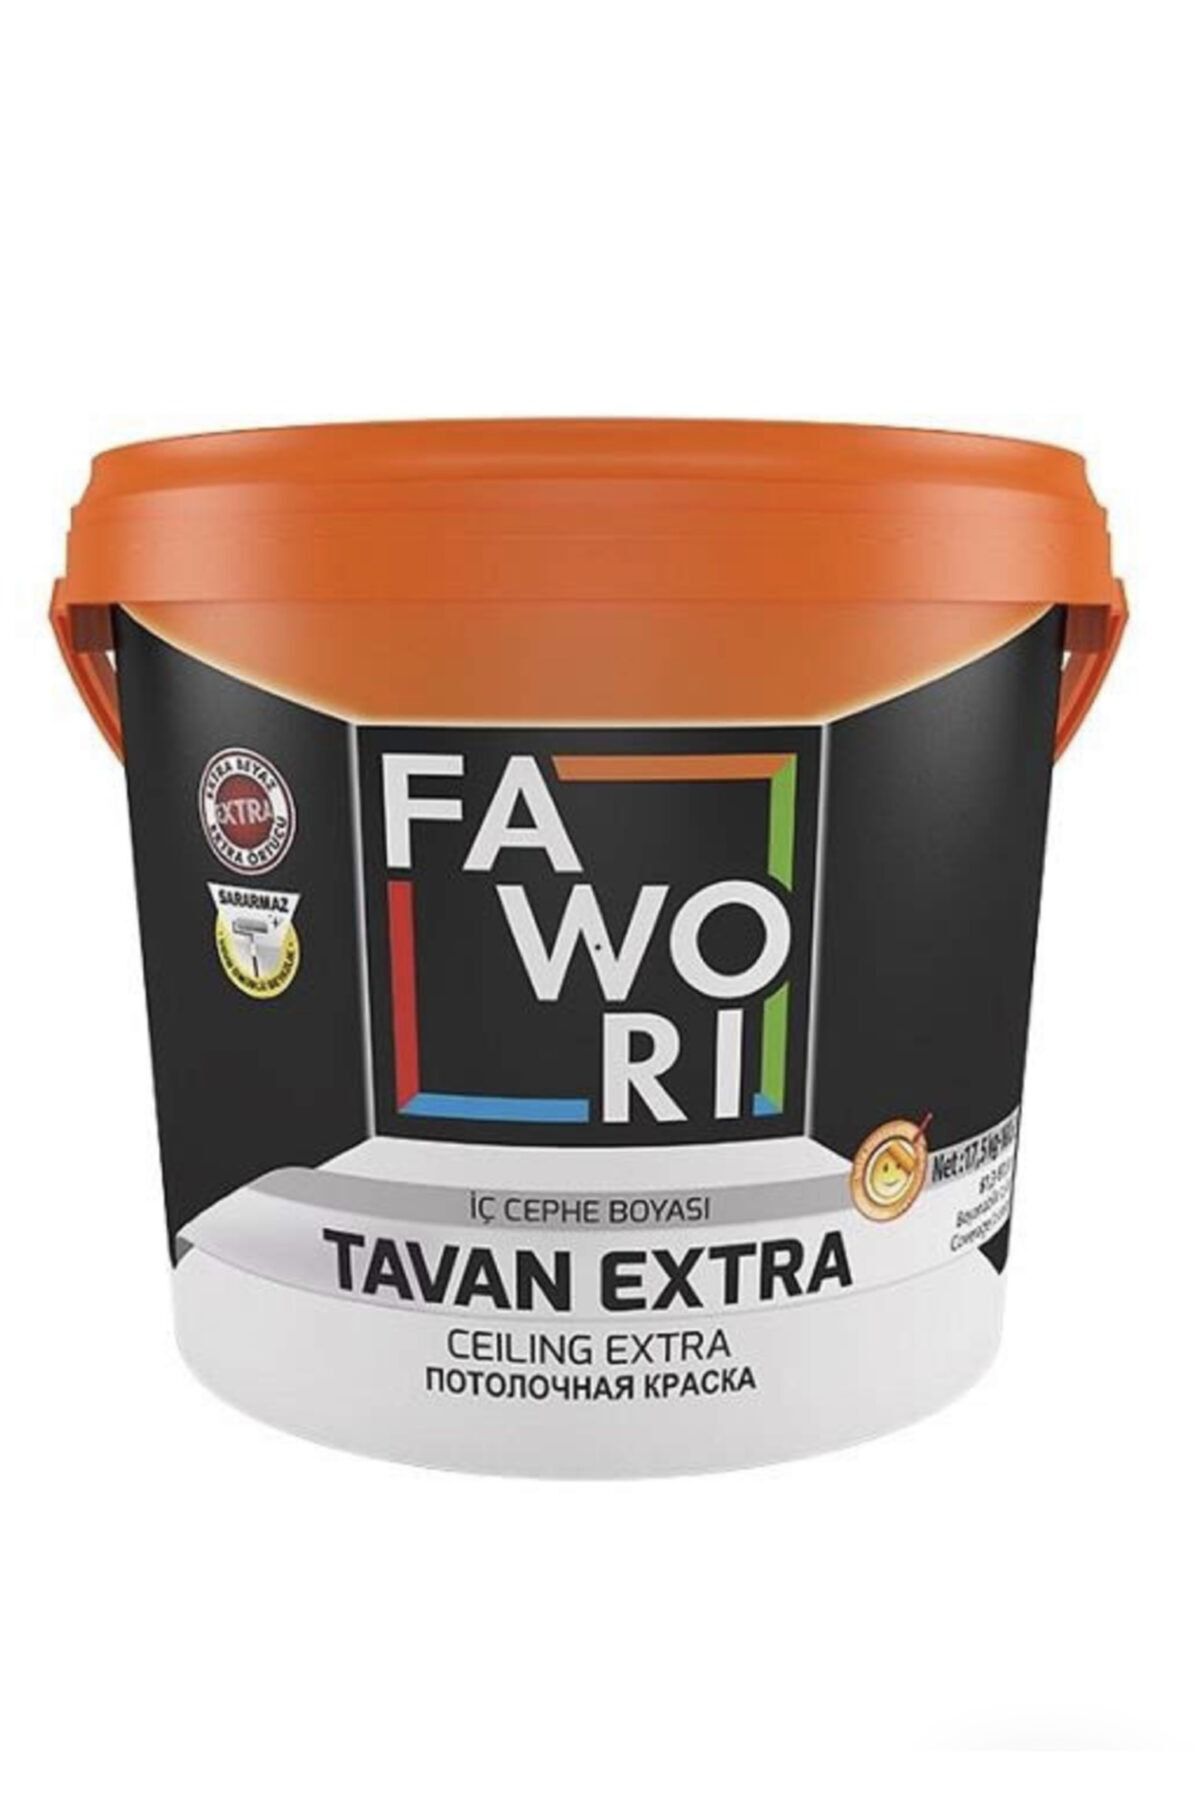 Favori Fawori Tavan Extra 17,5 Kg